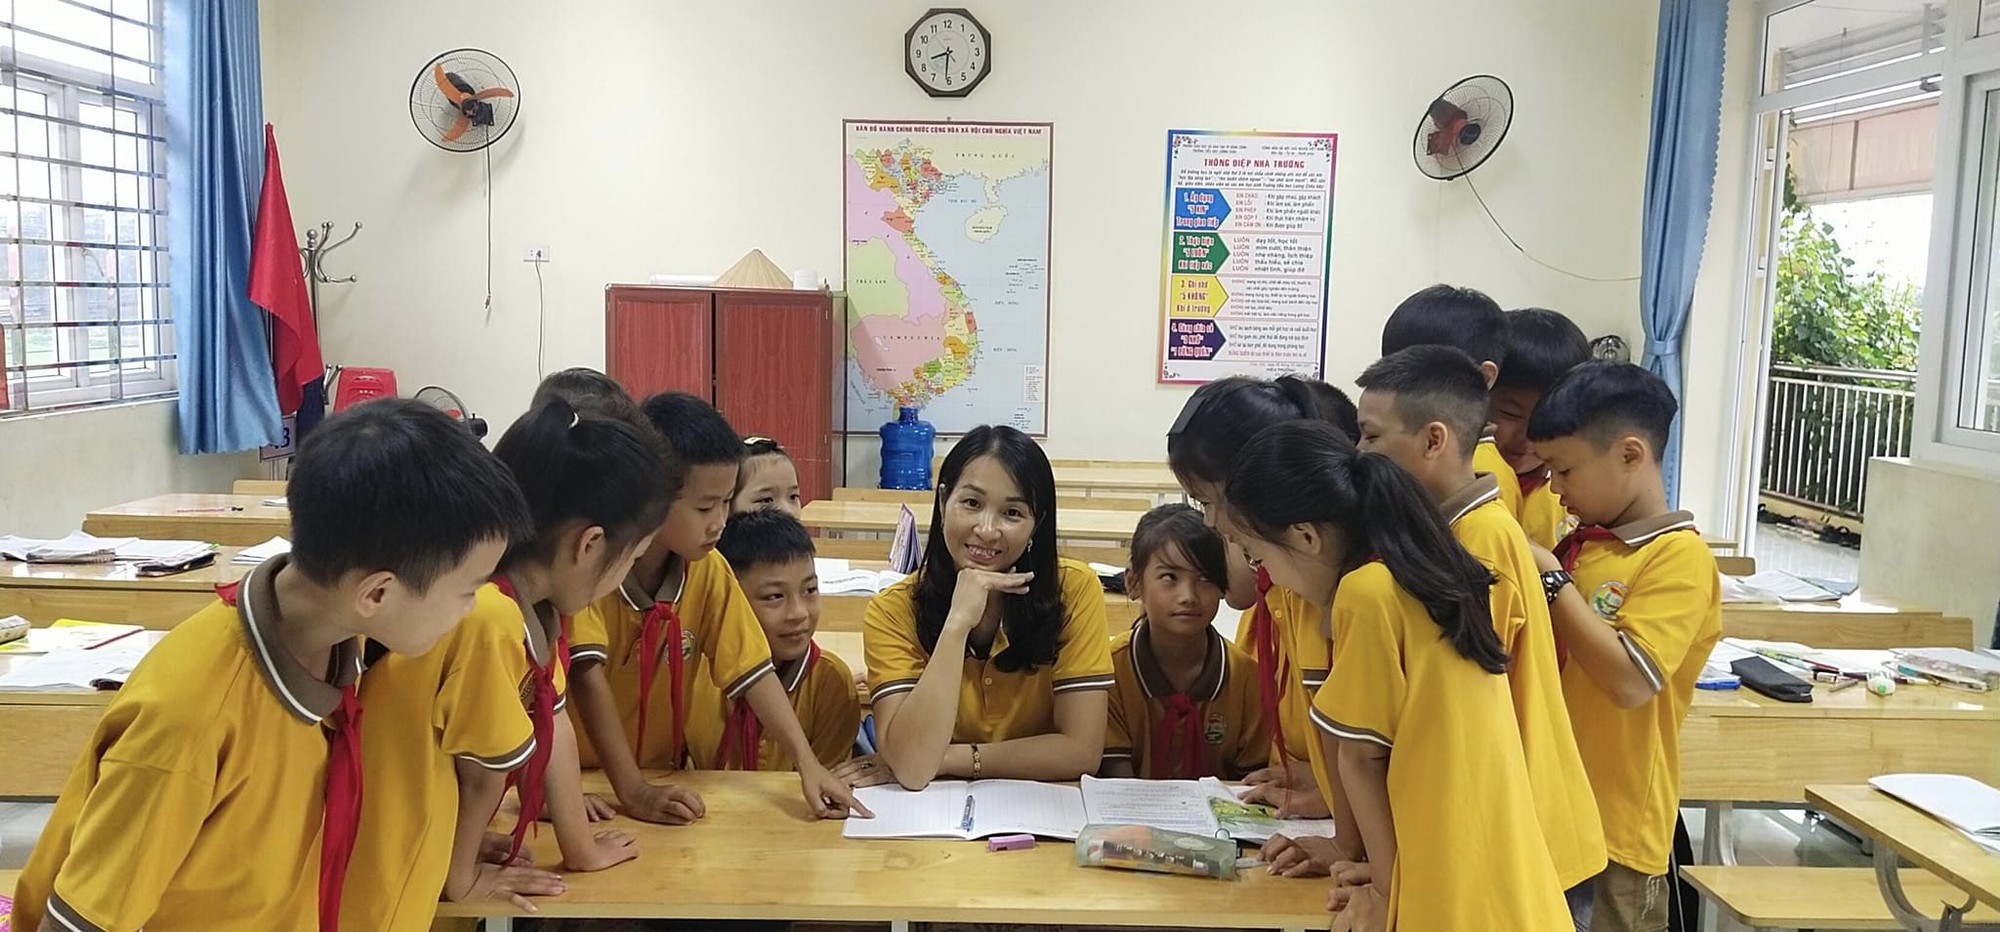 Cô giáo bị nhóm học sinh xúc phạm, hành hung ngất xỉu ở Tuyên Quang: Nhiều giáo viên bị thách thức không kém - Ảnh 2.